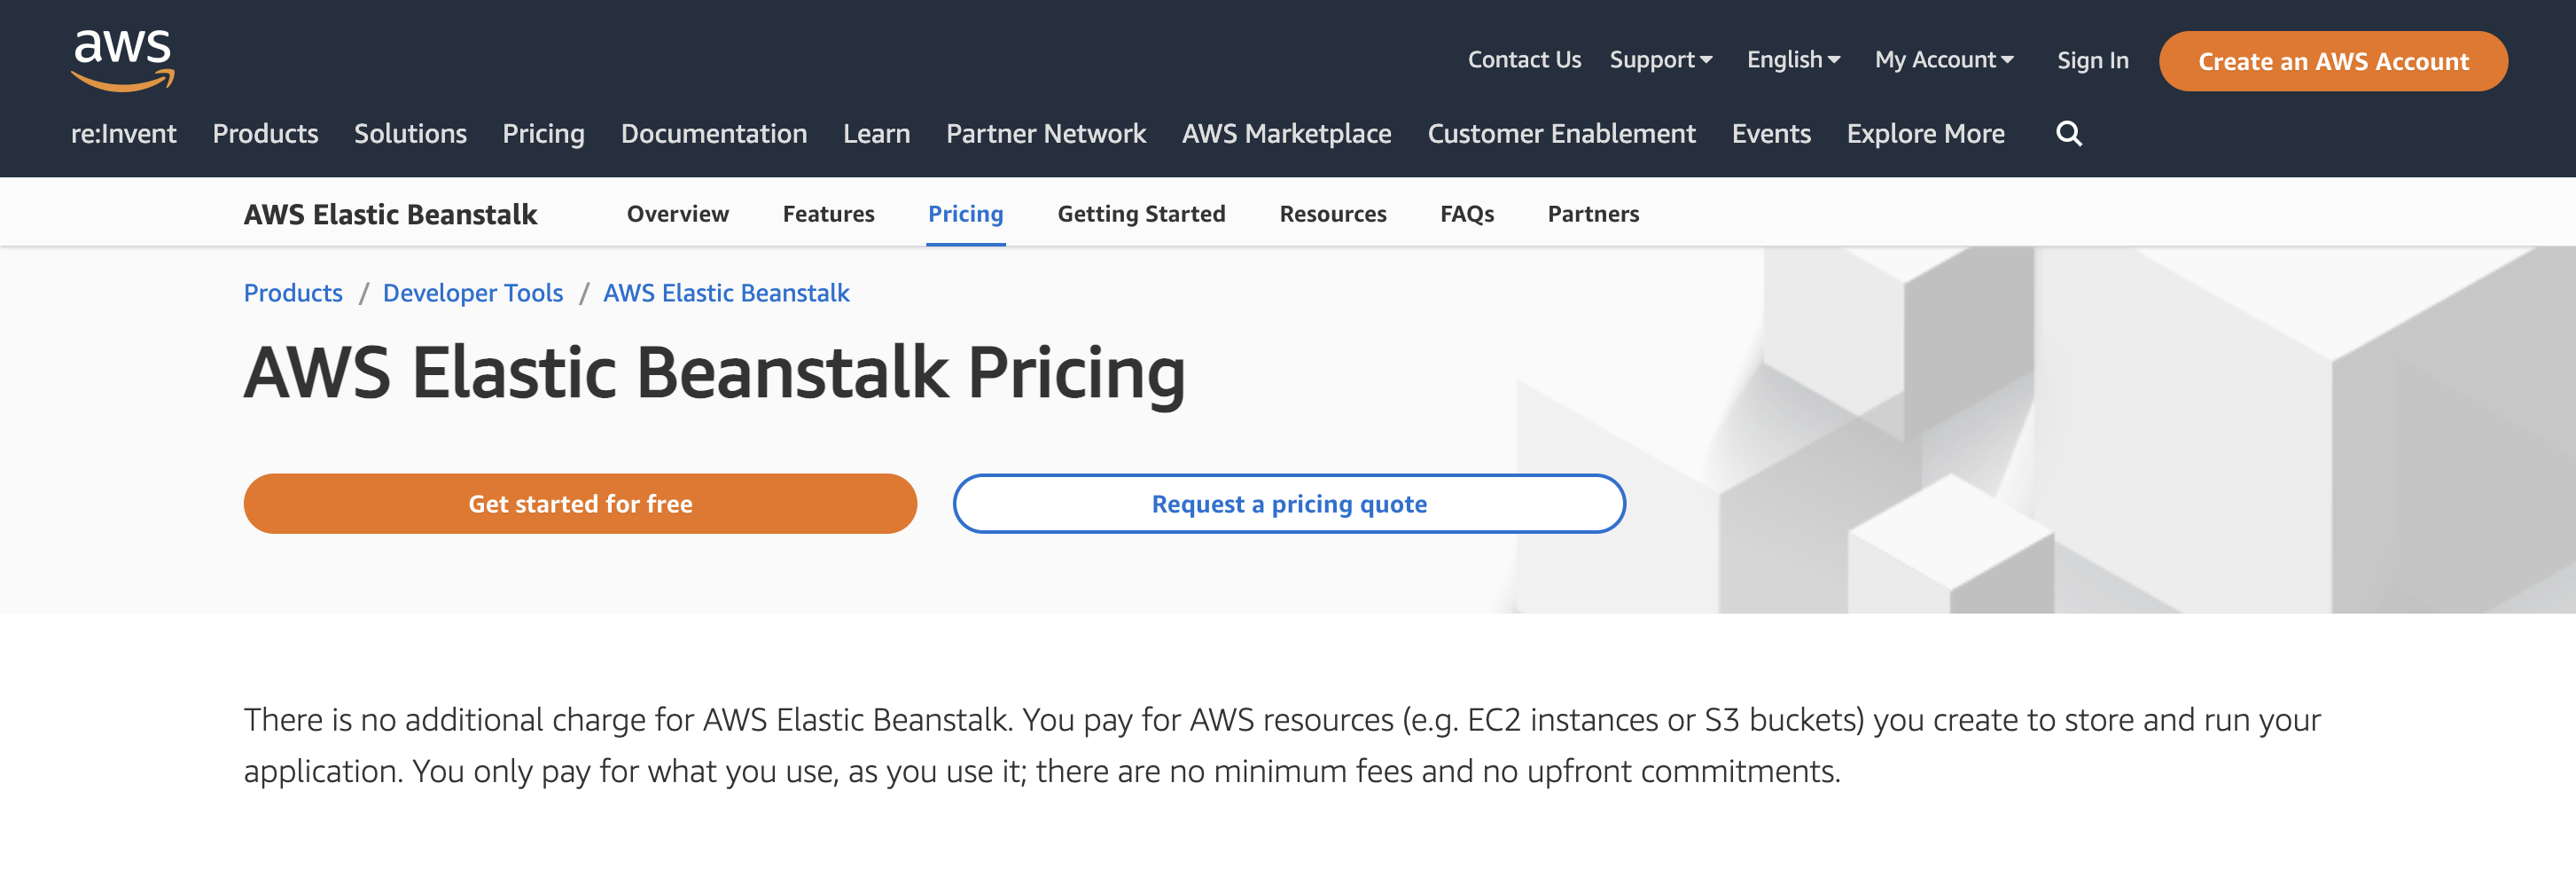 AWS Elastic Beanstalk Pricing